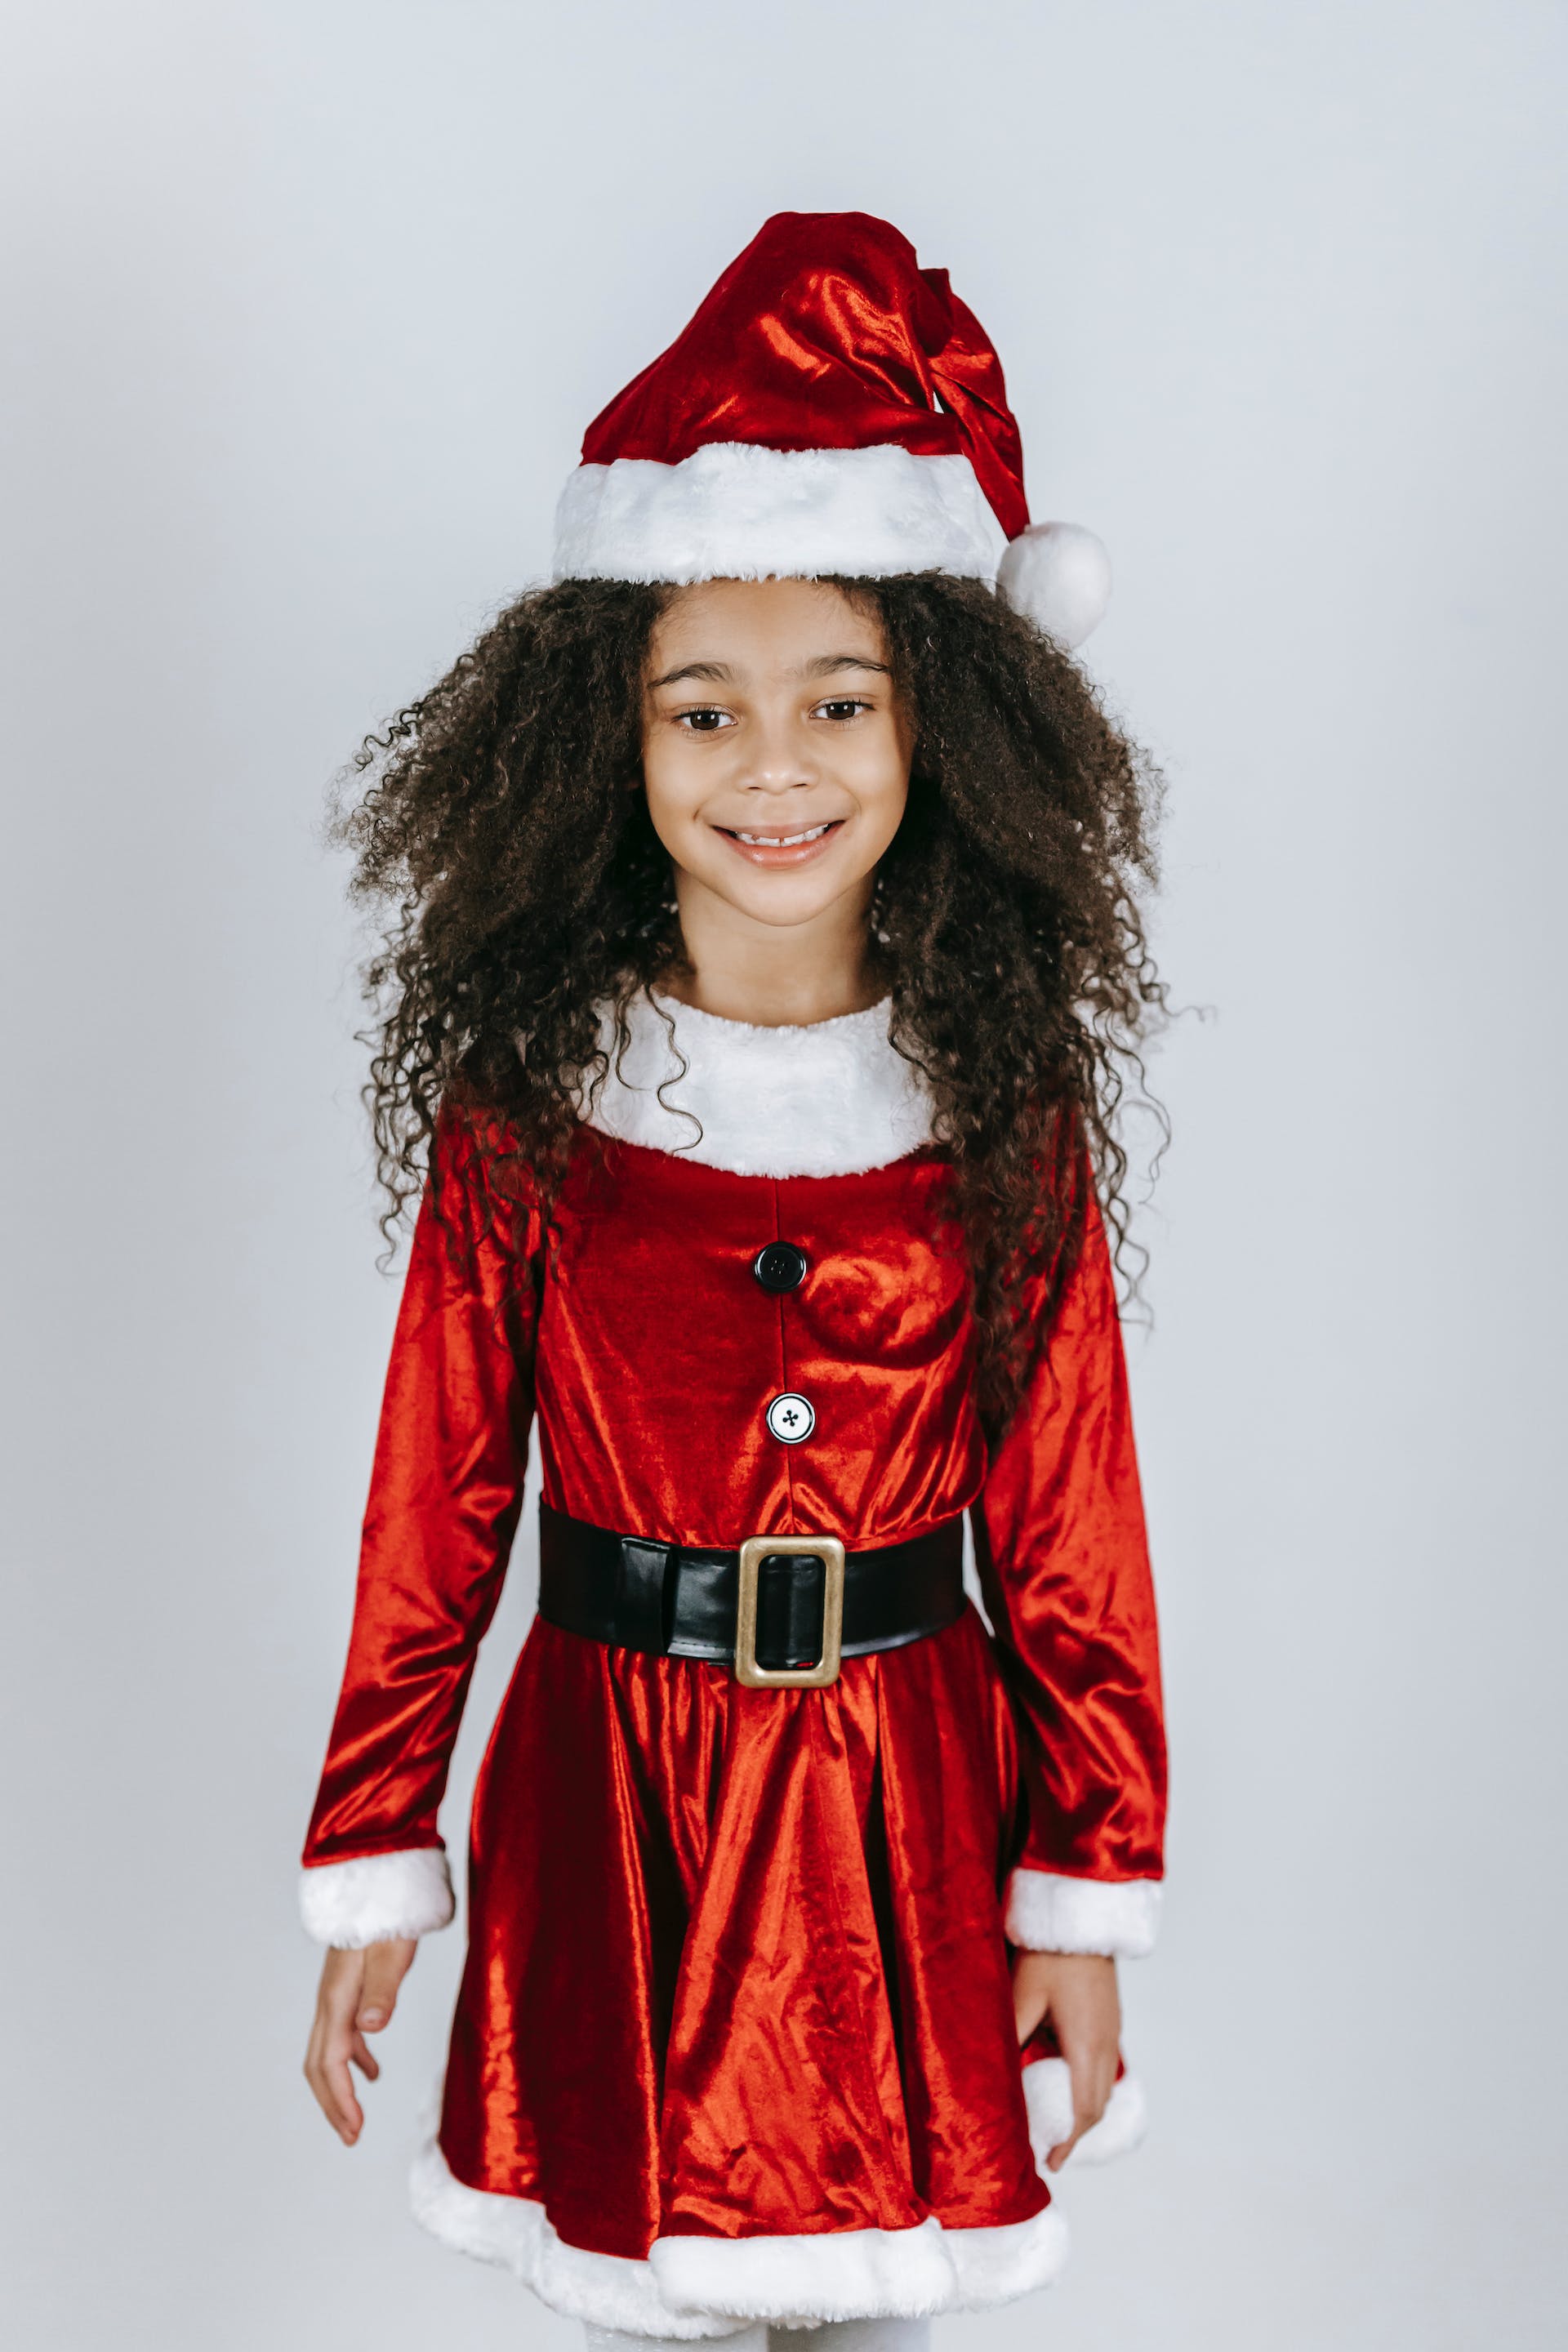 Ein kleines Mädchen im Weihnachtsmann-Outfit | Quelle: Pexels